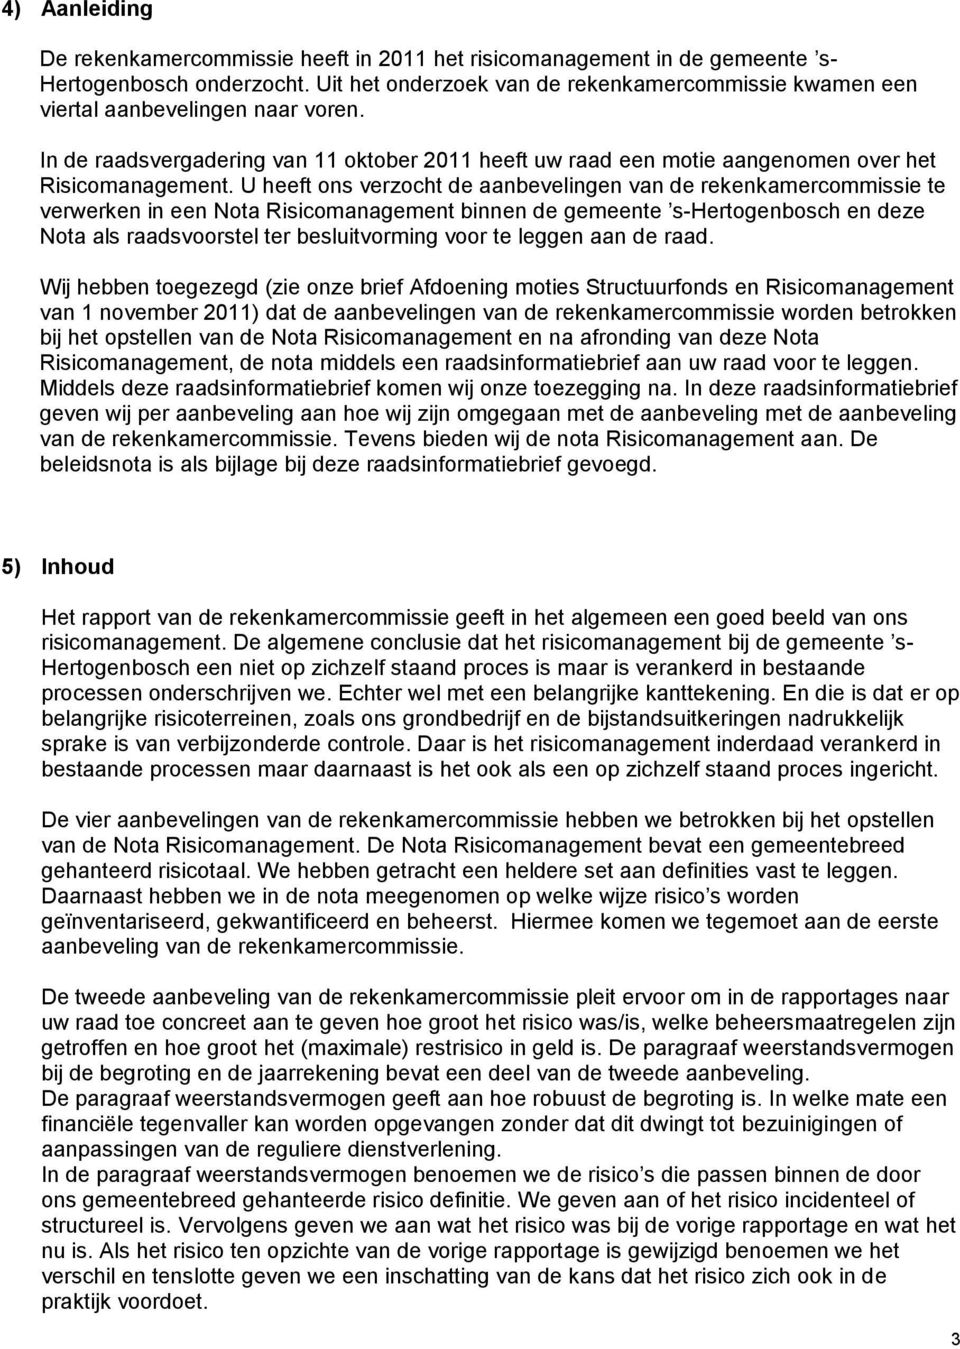 U heeft ons verzocht de aanbevelingen van de rekenkamercommissie te verwerken in een Nota Risicomanagement binnen de gemeente s-hertogenbosch en deze Nota als raadsvoorstel ter besluitvorming voor te